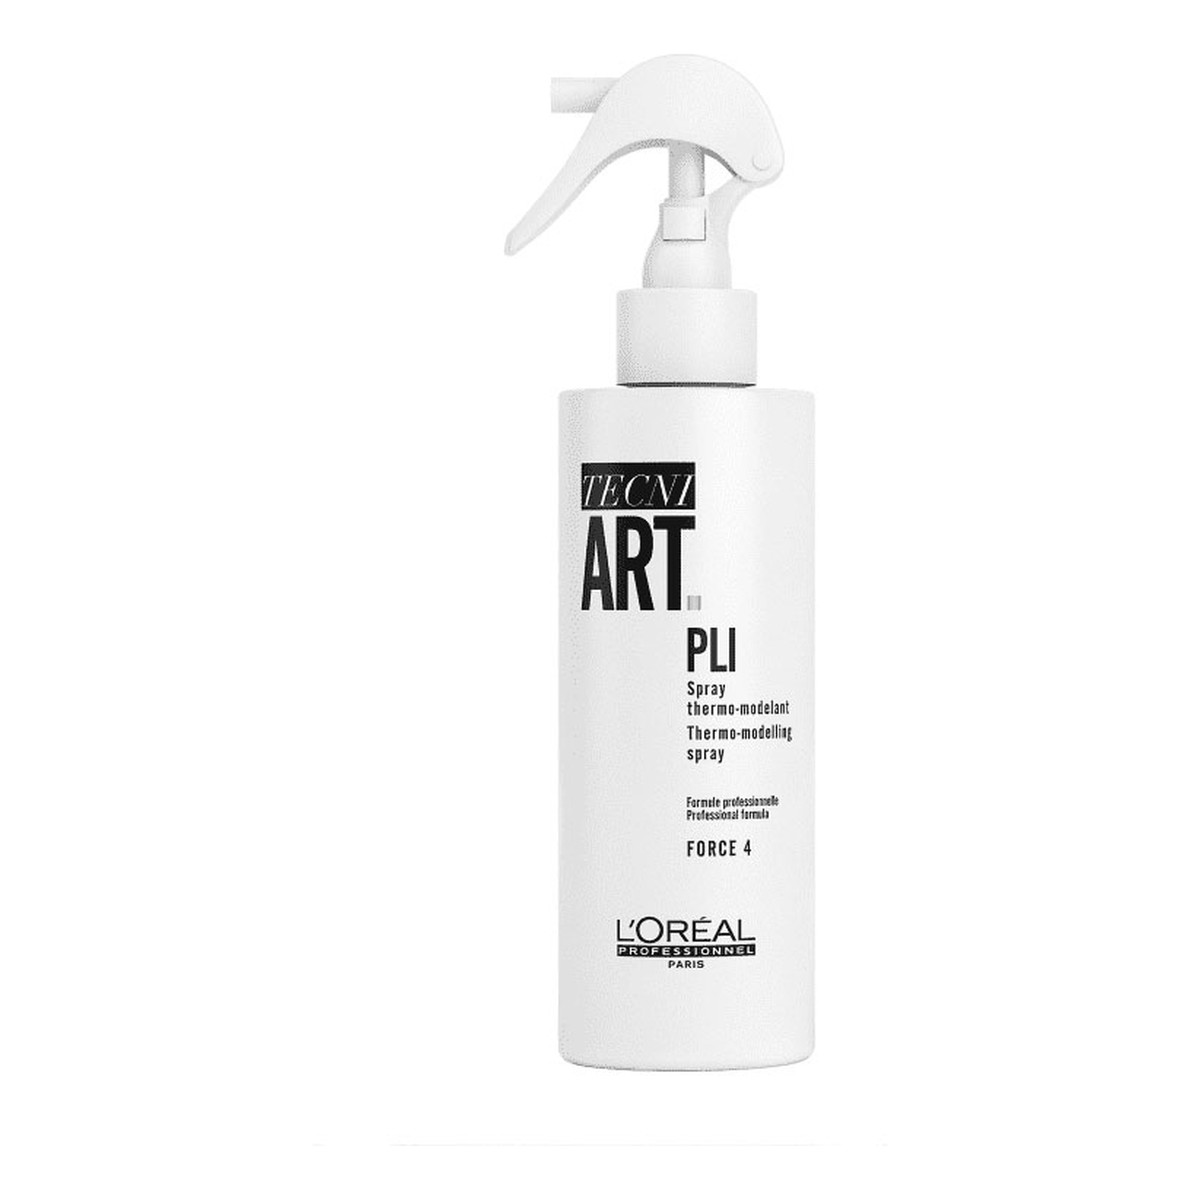 L'Oreal Paris Tecni Art Pli termoutrwalający spray modelujący do włosów Force 4 190ml